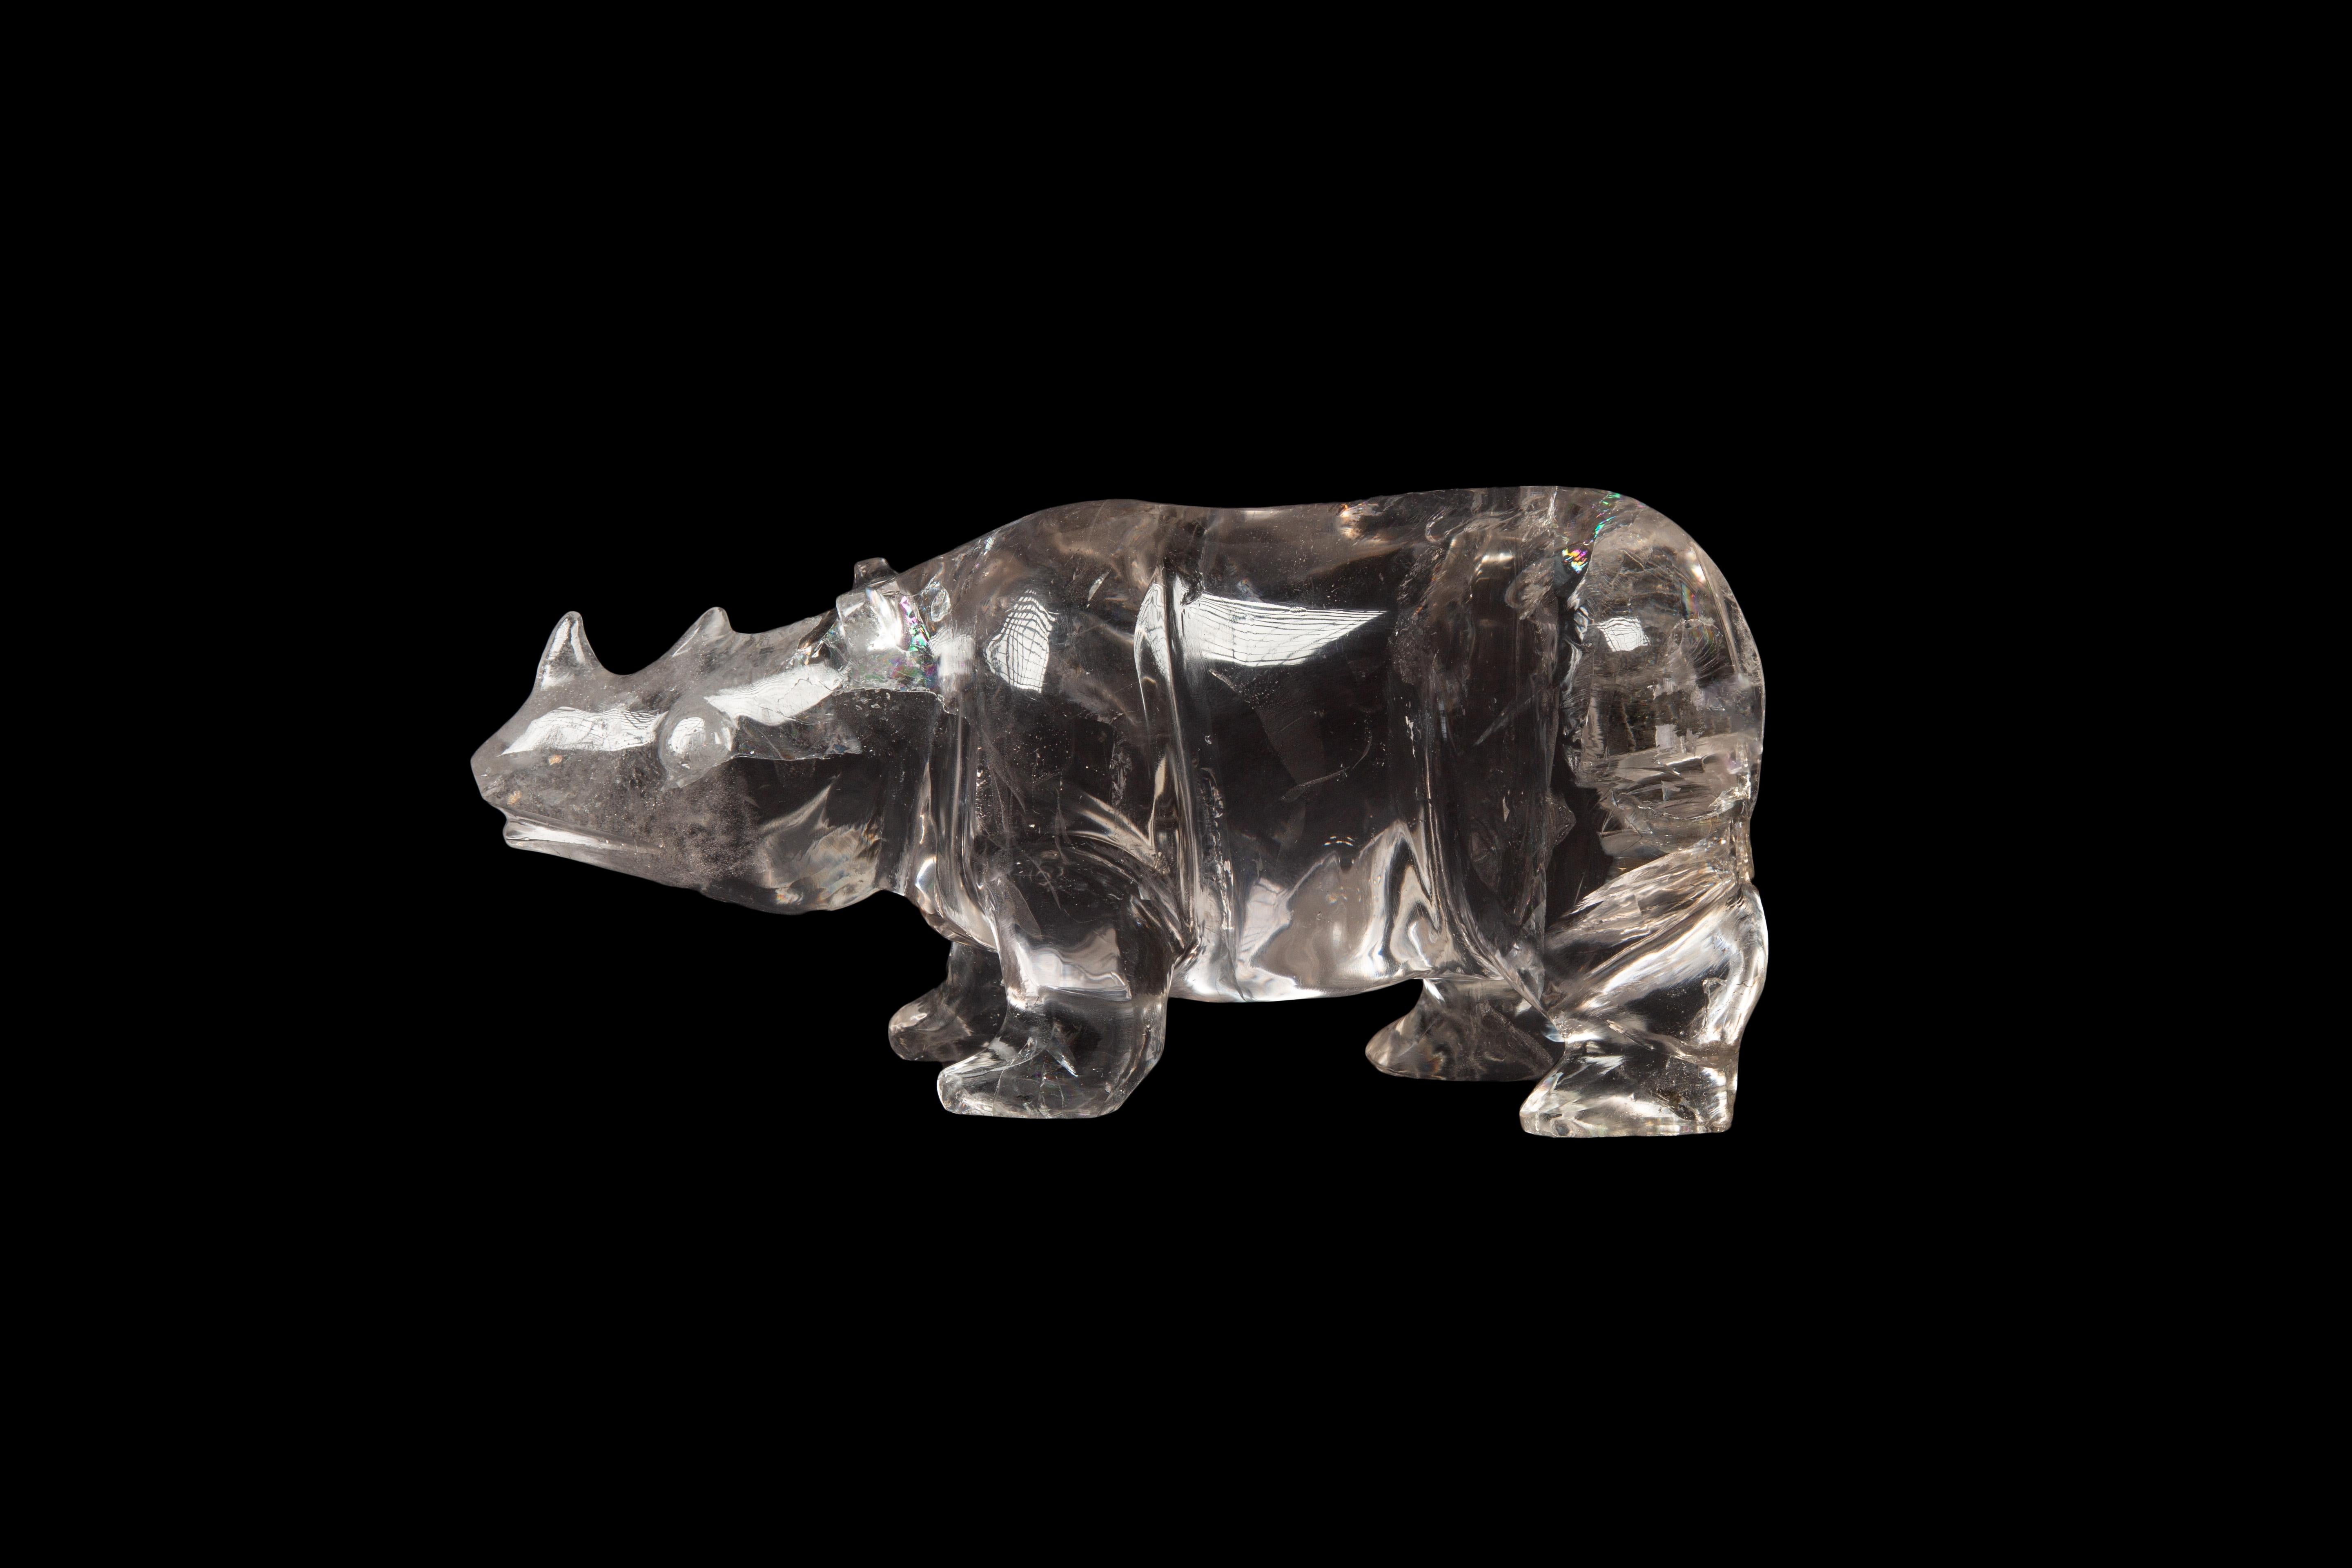 Cet exceptionnel rhinocéros en cristal de roche (quartz) sculpté à la main est une magnifique œuvre d'art qui témoigne de l'habileté et du savoir-faire de son créateur. D'une hauteur de 4 pouces, d'une largeur de 3 pouces et d'une longueur de 8